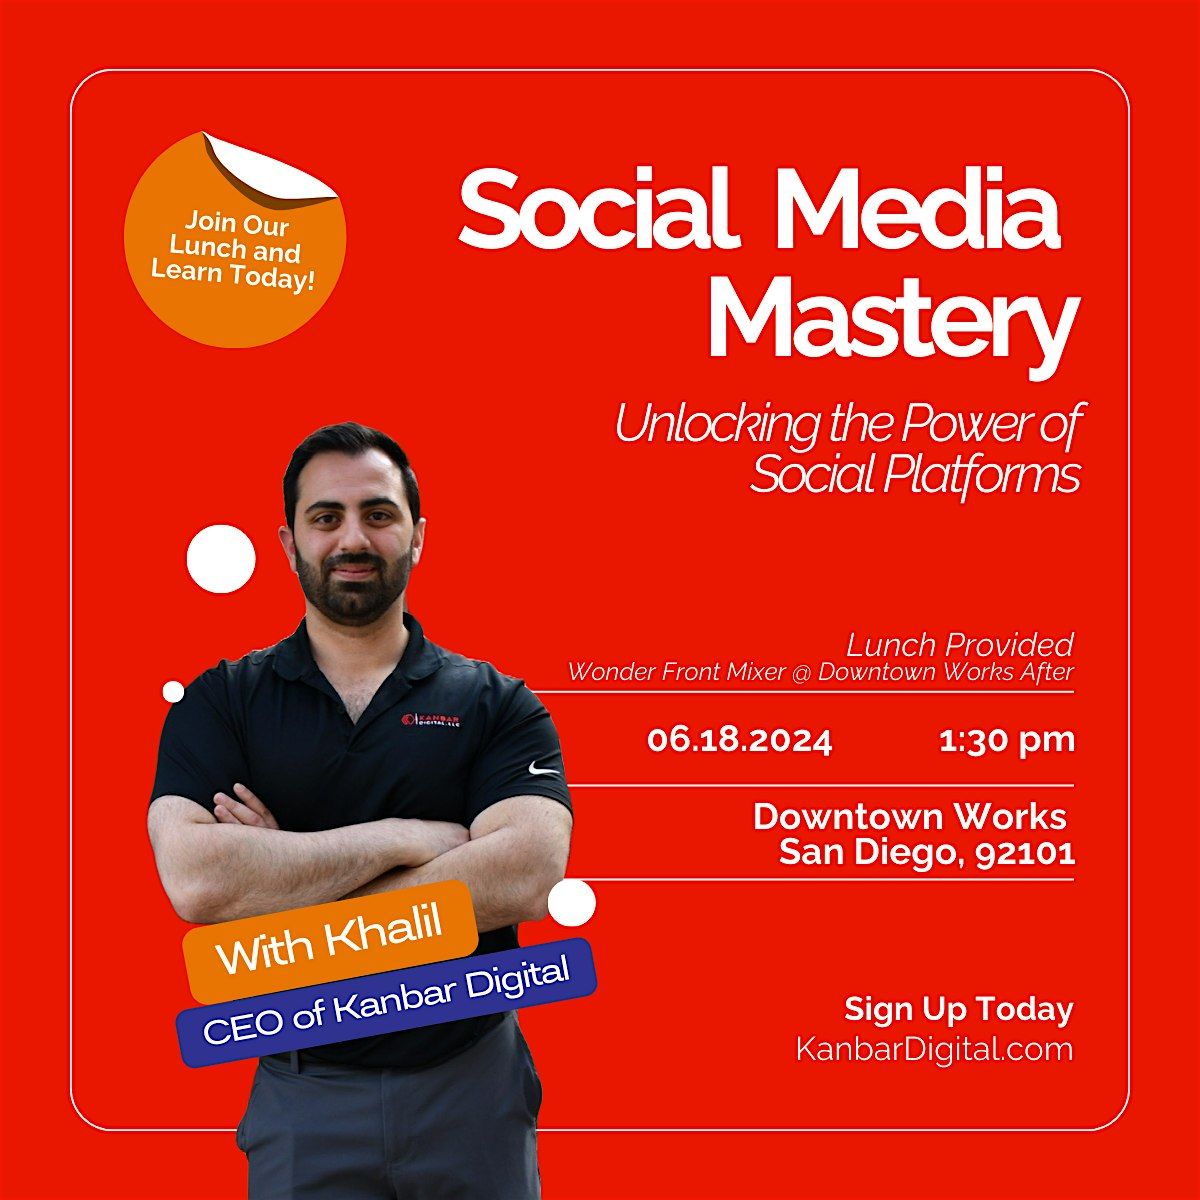 Social Media Mastery: Unlocking the Power of Social Platforms